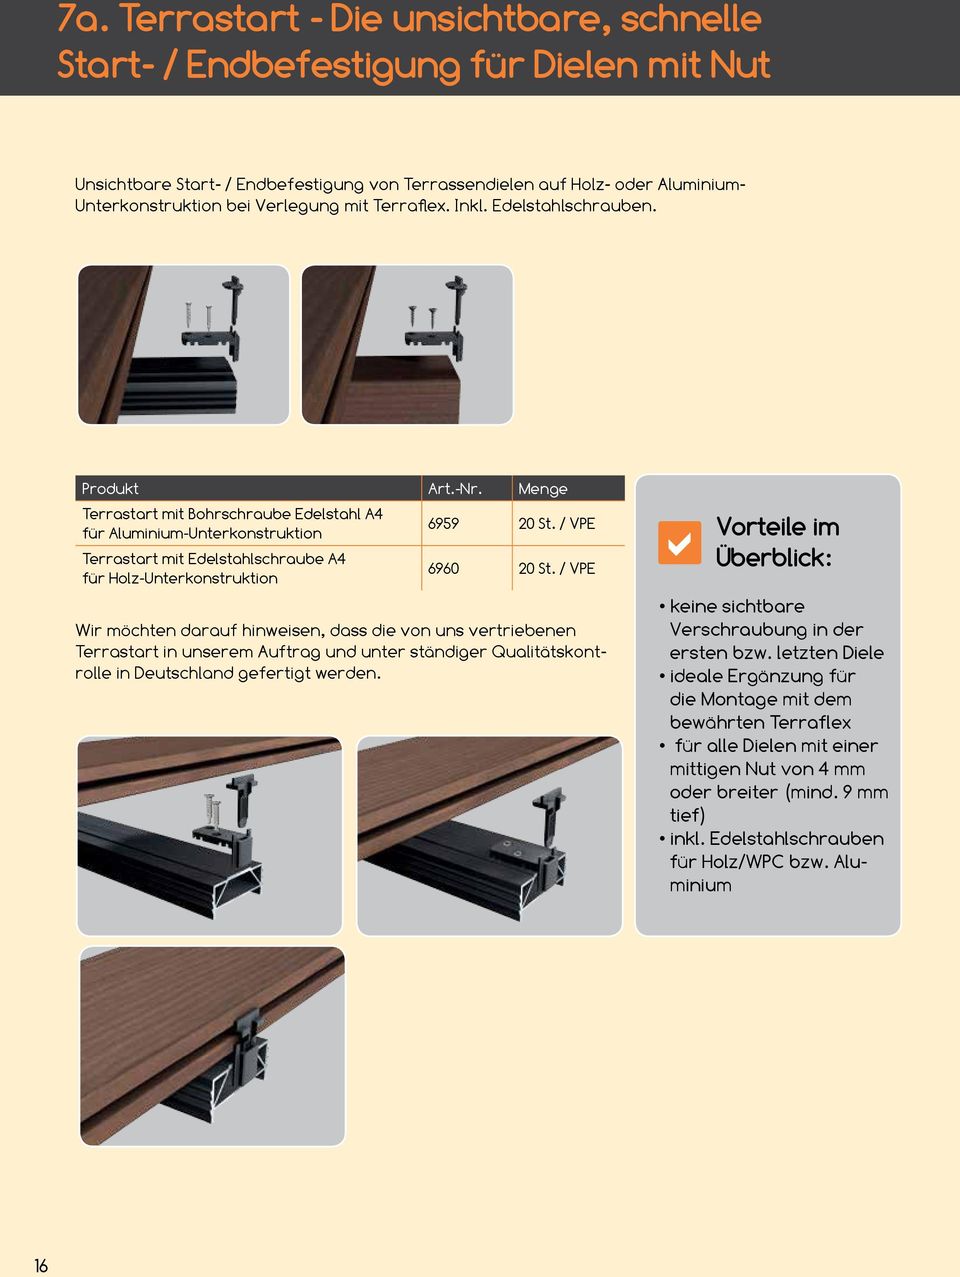 / VPE Terrastart mit Edelstahlschraube A4 für Holz-Unterkonstruktion 6960 20 St.